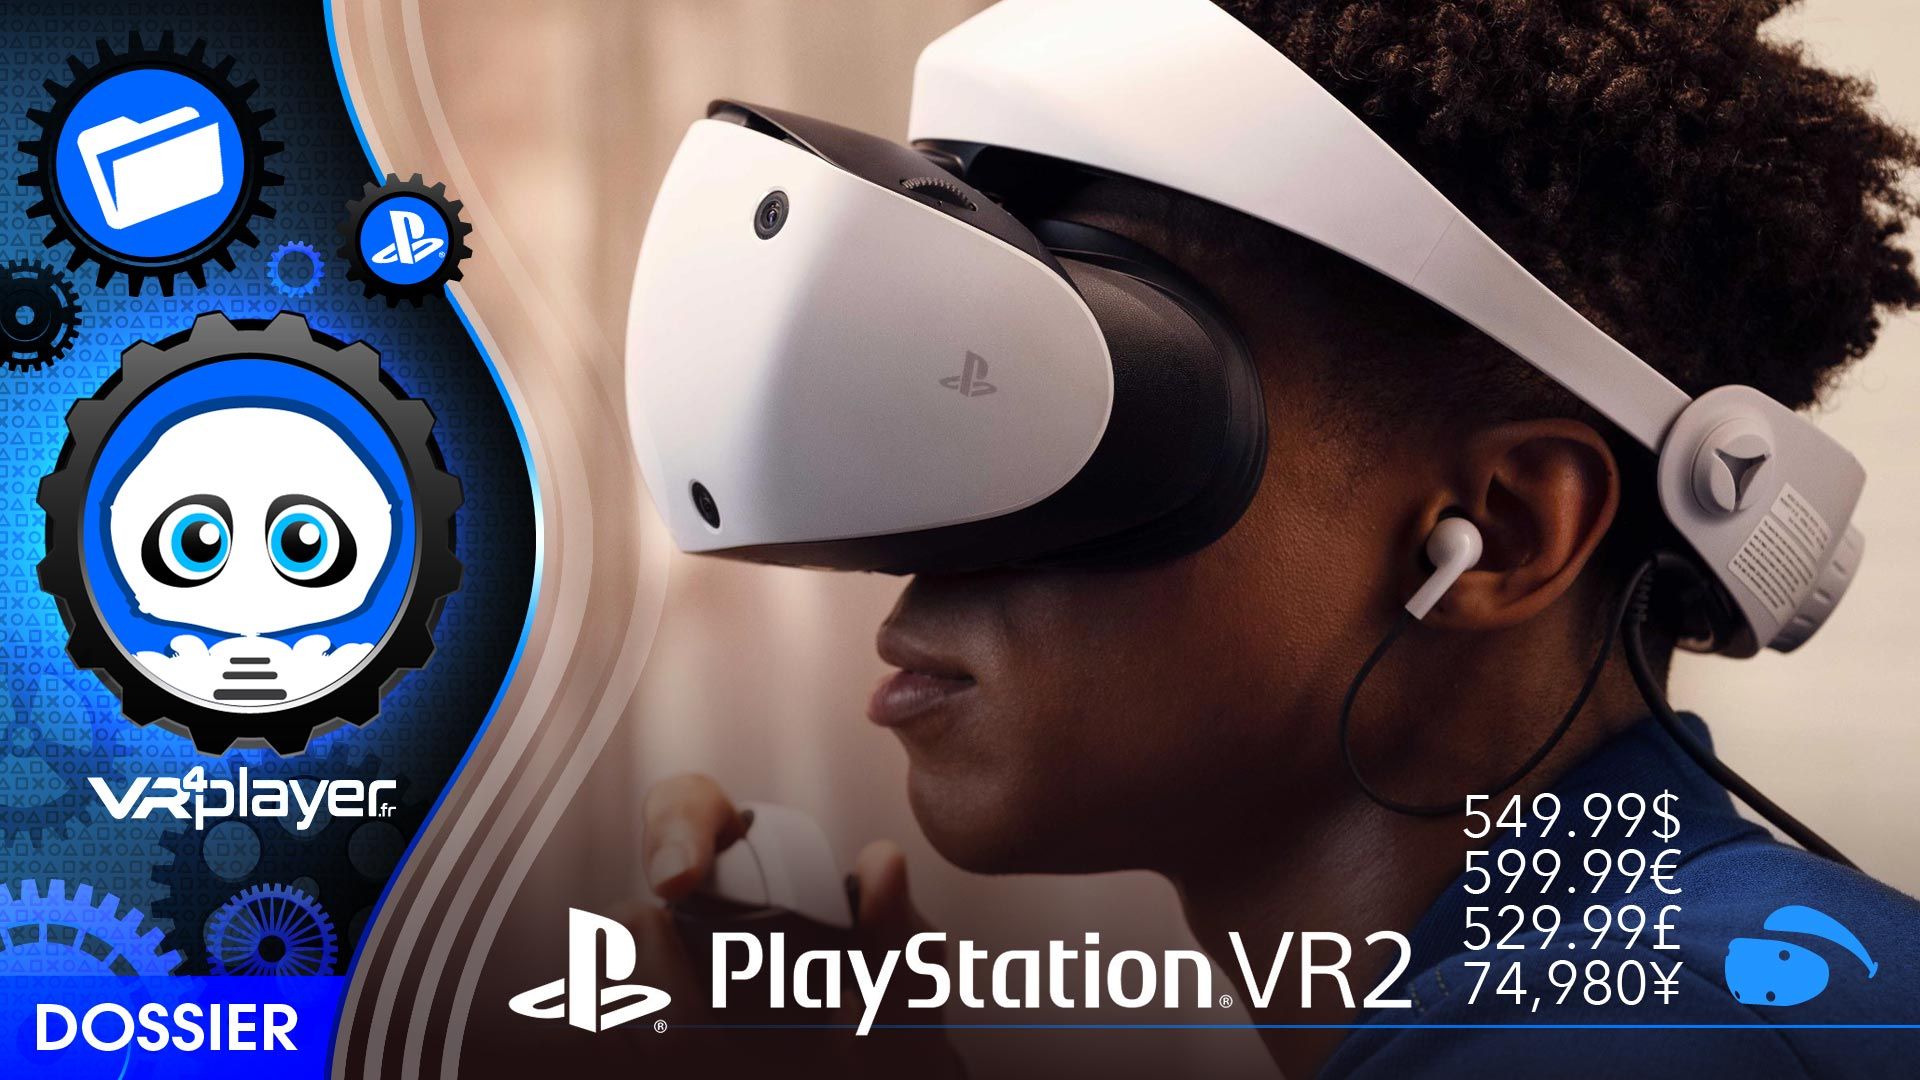 PlayStation VR2 : Prix, stratégie et infos PSVR2, Dossier vidéo de 36 min.